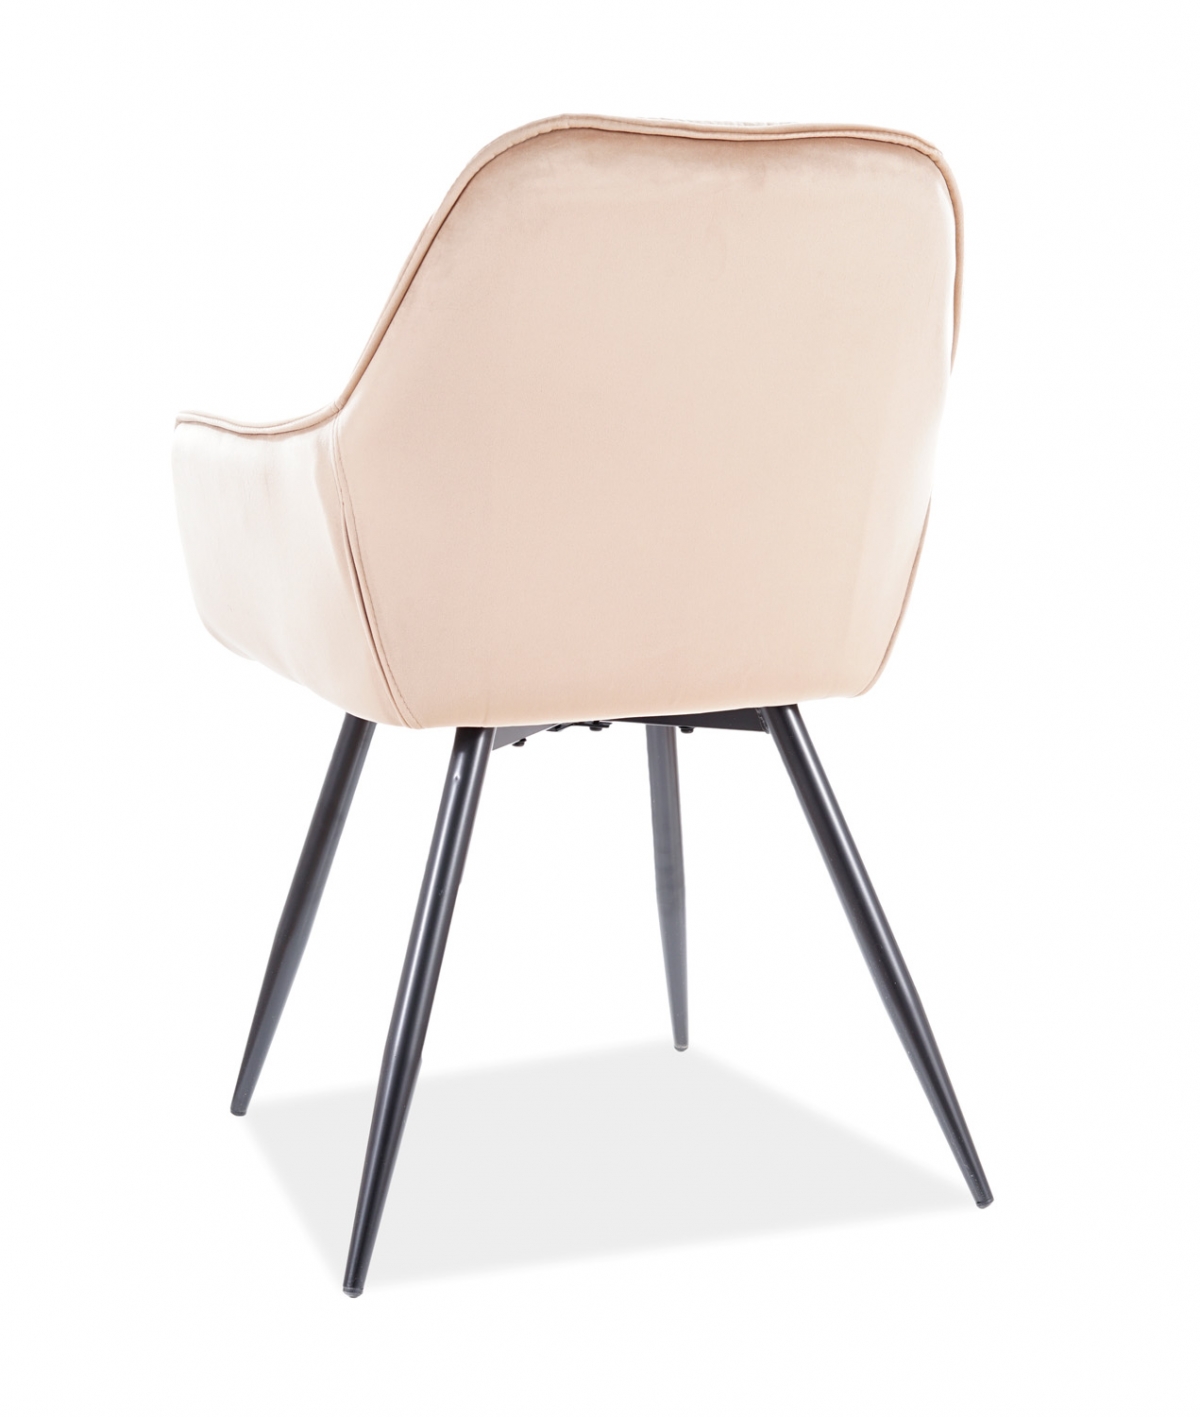 Krzesło tapicerowane Cherry Velvet na metalowych nogach - beż / Bluvel 28 / czarne nogi krzesło tapicerowane